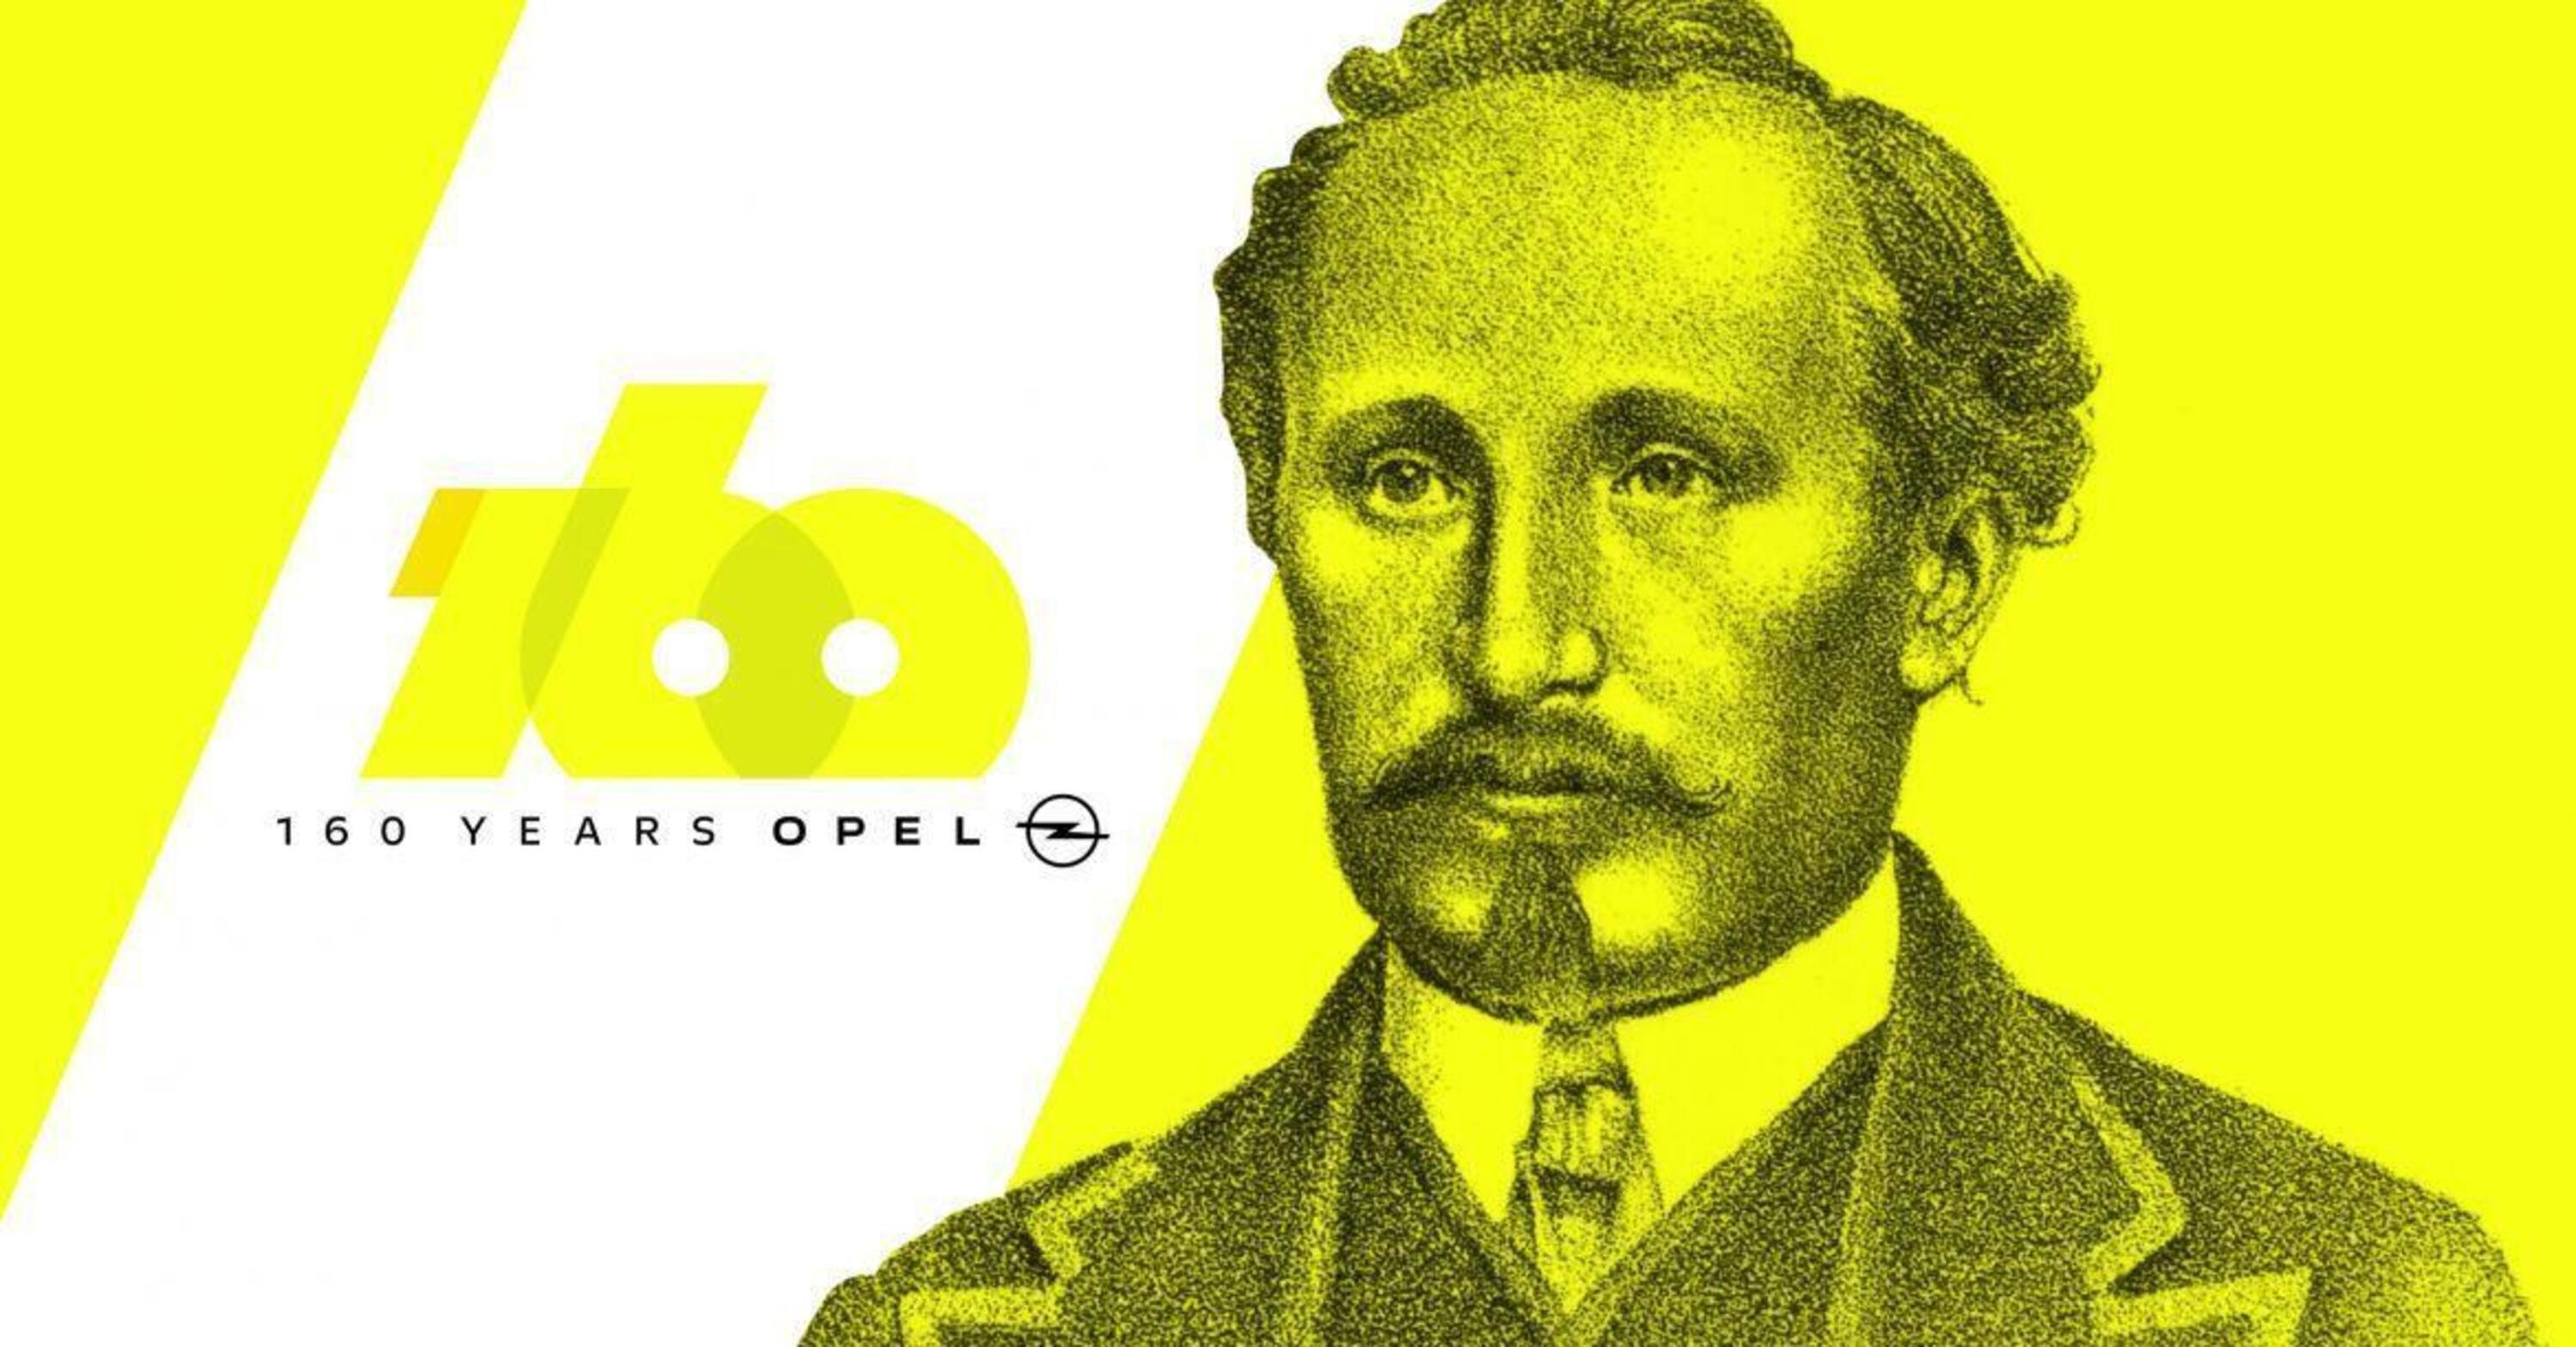 La Opel compie 160 anni: ha iniziato con le macchine da cucire passando per bici e &quot;razzi&quot;